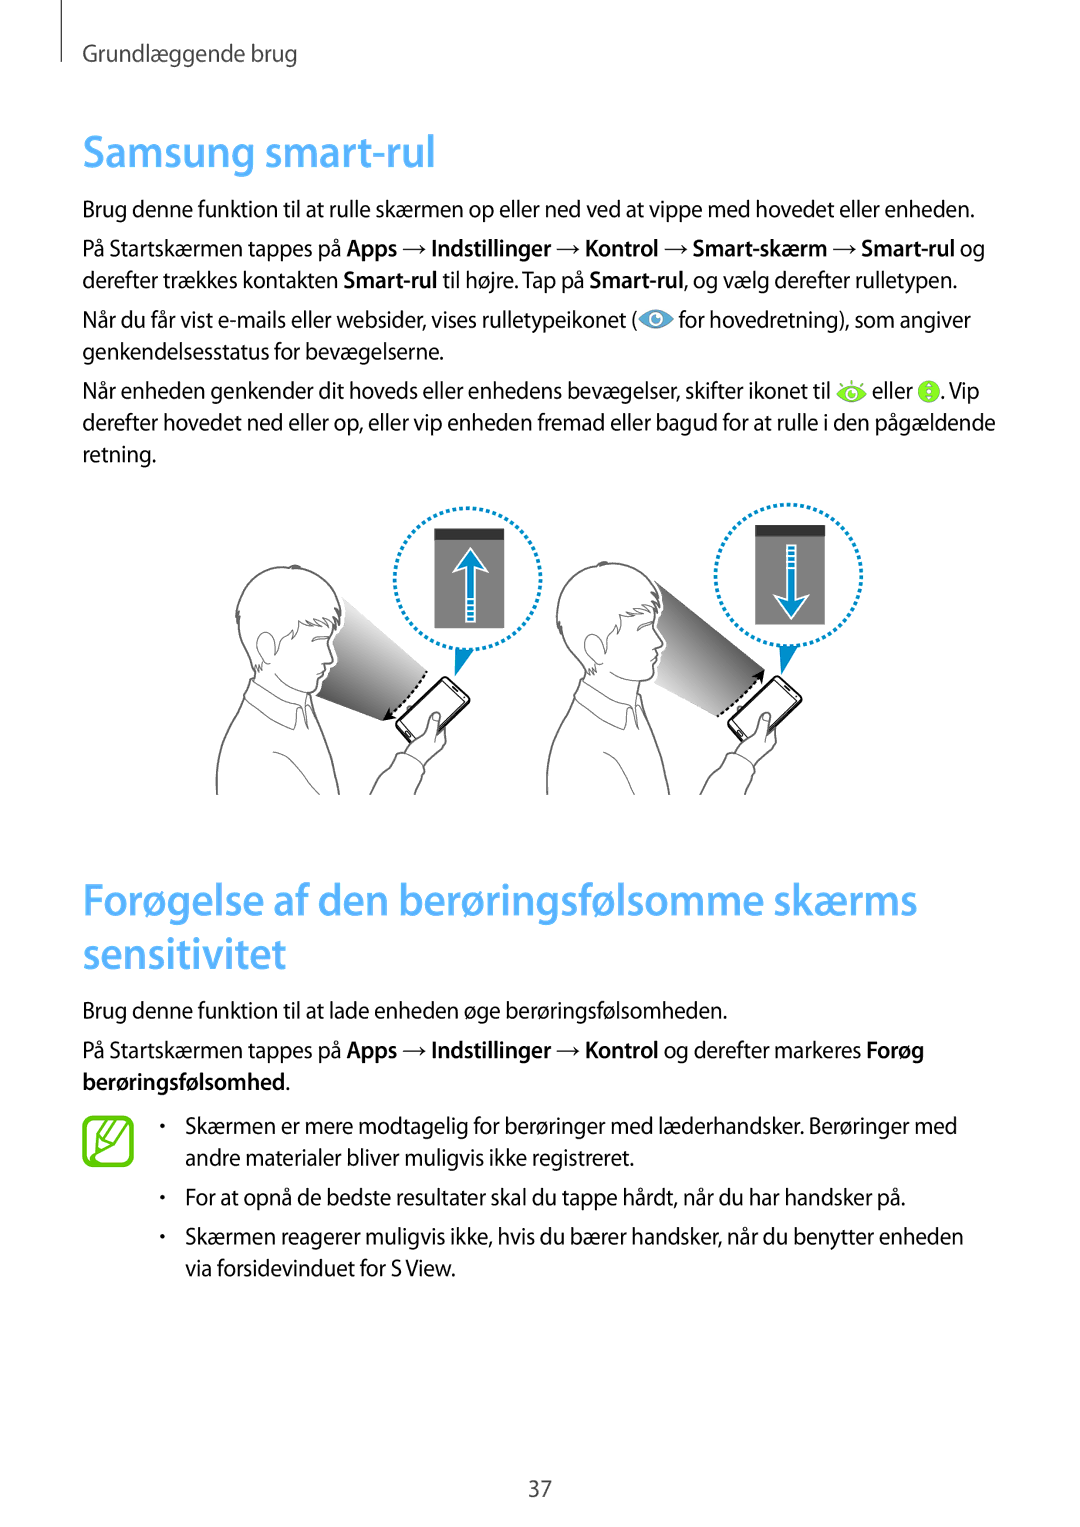 Samsung SM-N7505ZGANEE, SM-N7505ZKANEE manual Samsung smart-rul, Forøgelse af den berøringsfølsomme skærms sensitivitet 